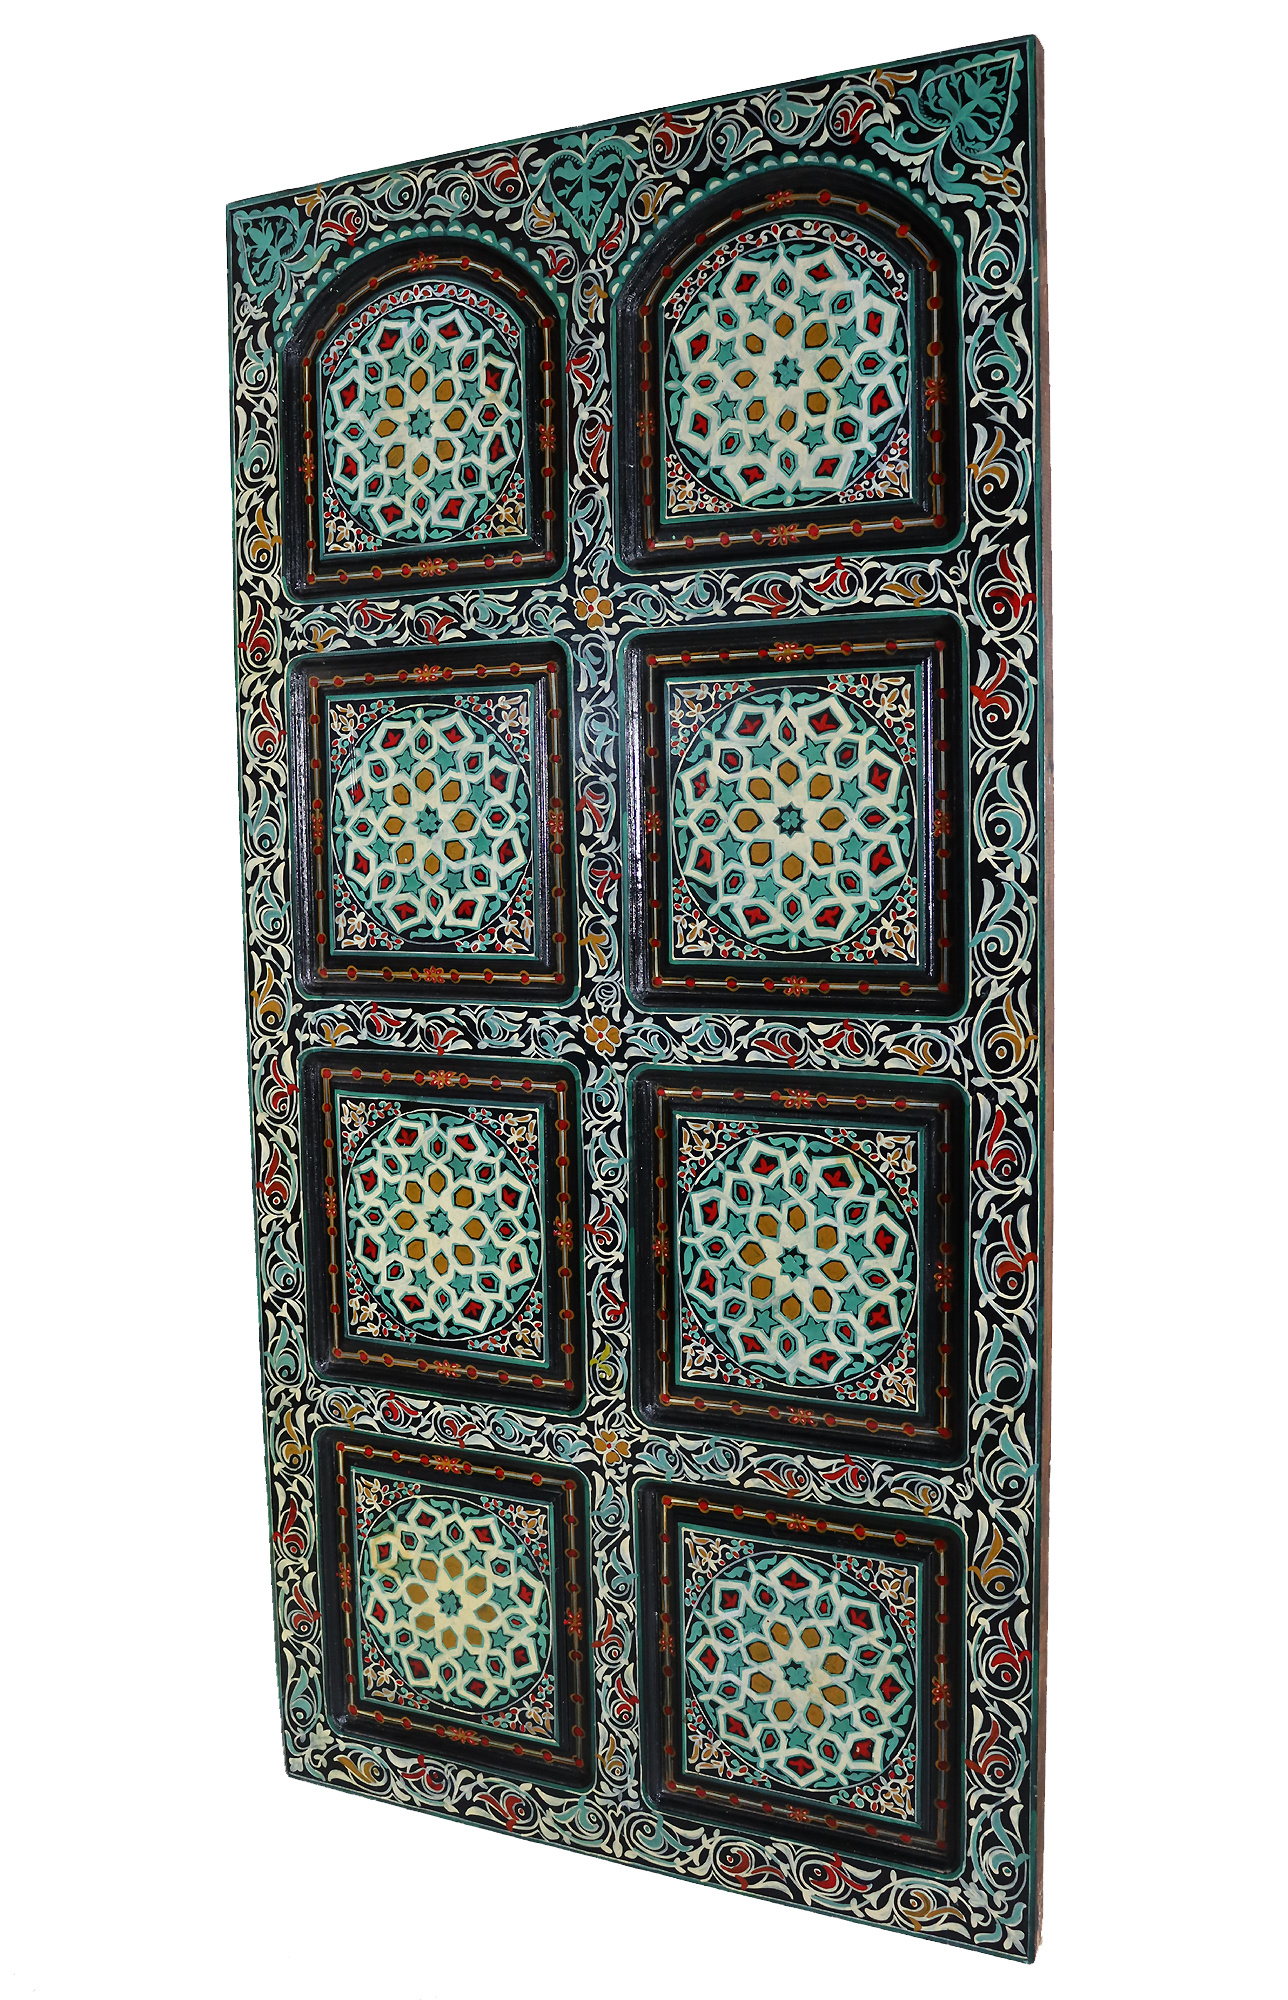 200x100 cm vintage orient solid wood handmade and hand painted  sliding door room door Barndoors door panel from  Afghanaistan  23/ Marokko